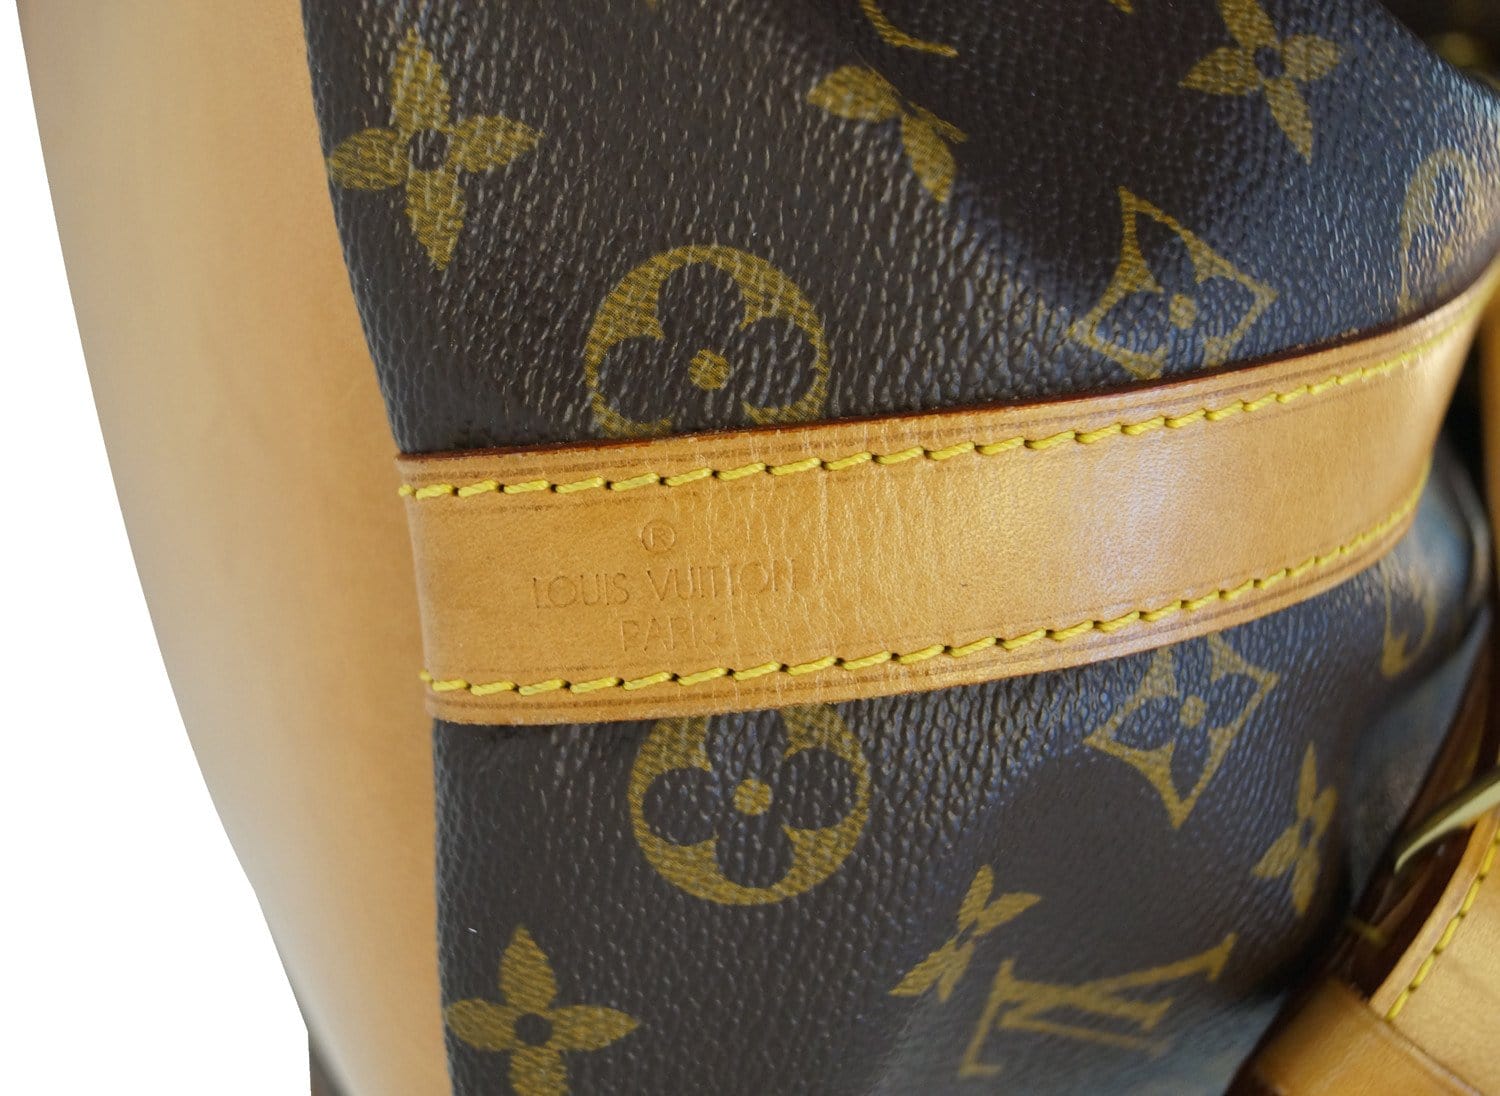 ✨Vintage Louis Vuitton Noe Petit- Easy Modification of Shoulder